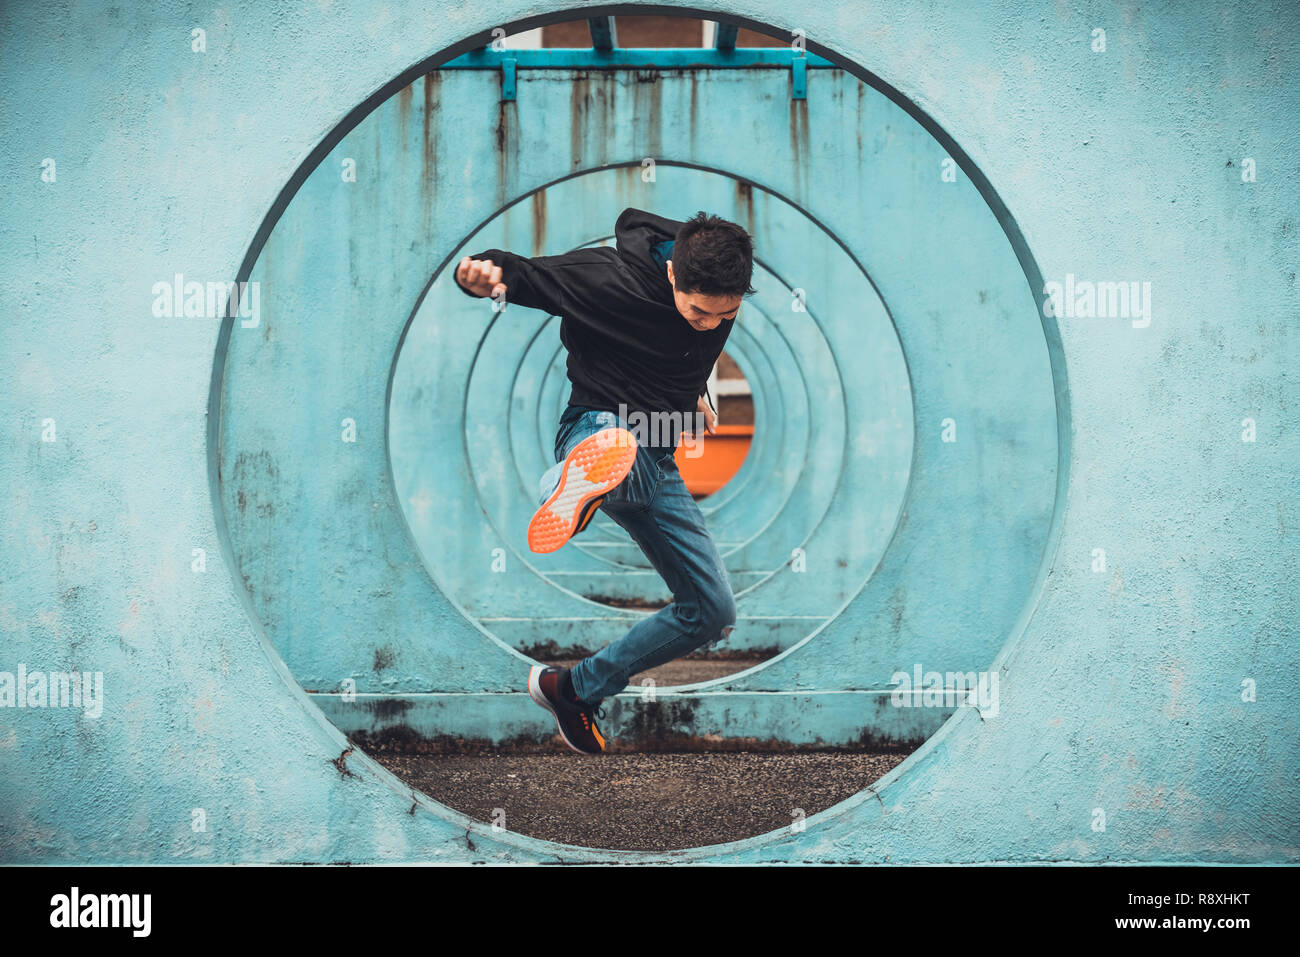 Jungen Asiatischen aktiven Mann springen und treten Aktion, Kreis looping Wand Hintergrund. Extreme sportliche Aktivität, gesunde Lebensweise, oder parkour Konzept Stockfoto